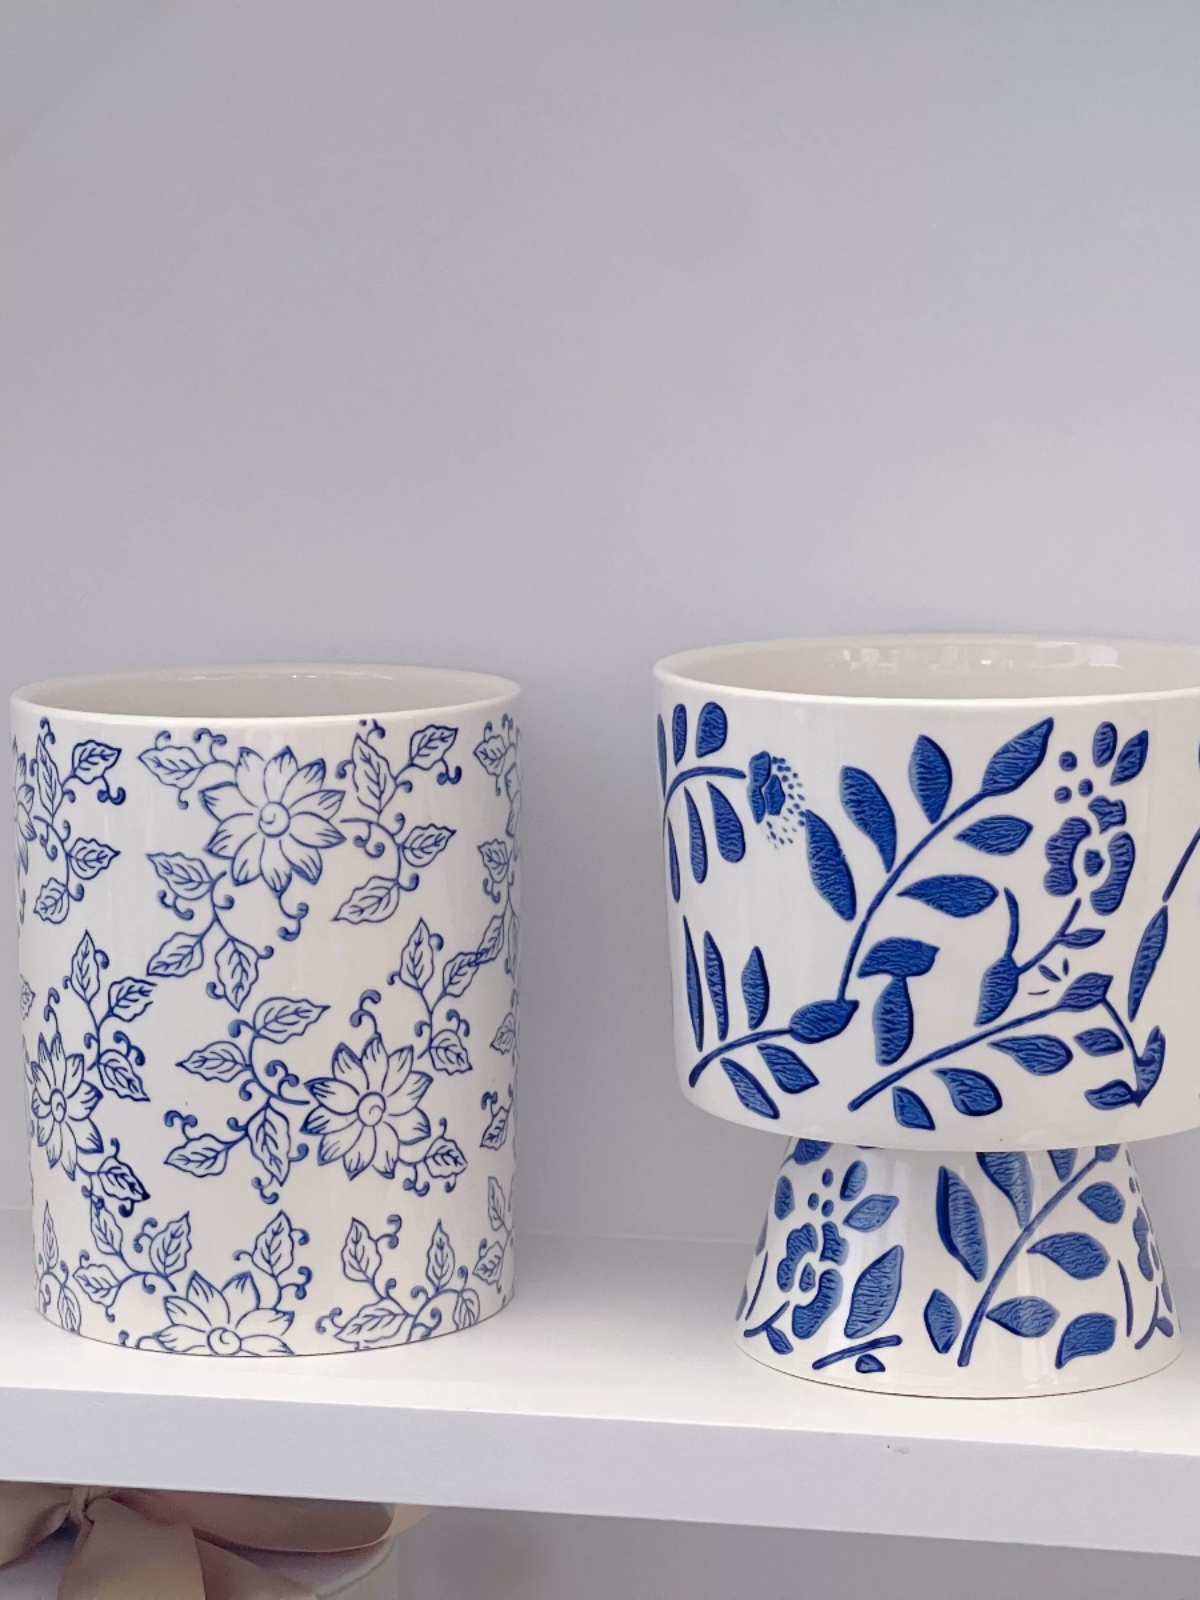 日式風格陶瓷花盆青花瓷蝴蝶蘭圖案高雅復古適用於室內裝飾和綠植栽培 (3.4折)